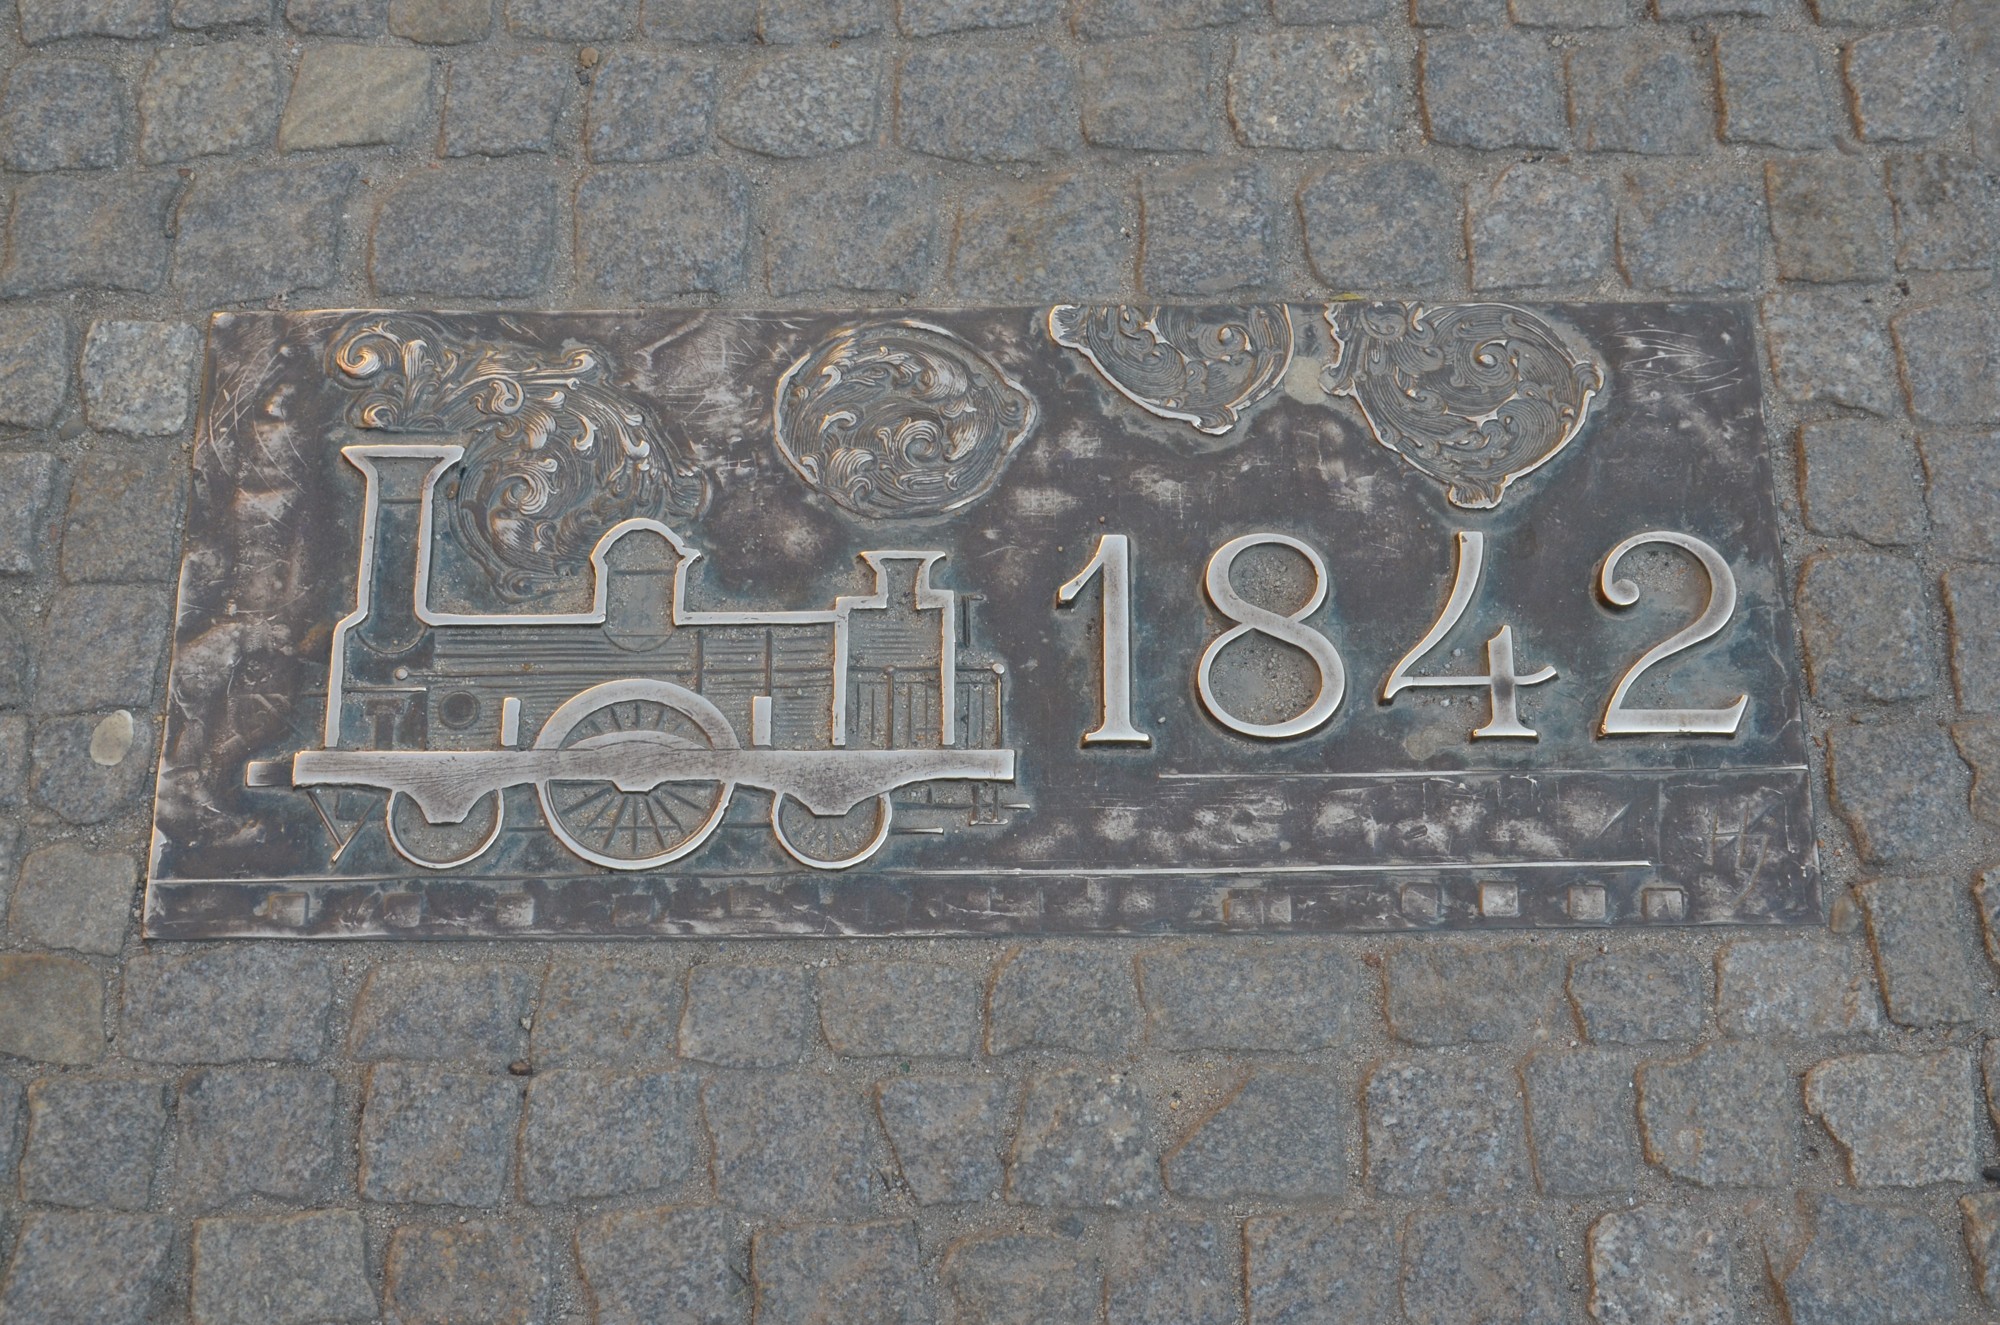 Mit der Eisenbahn beginnt die Industrialisierung. Die Linke-Hofmann-Werke (ab 1912), das größte Industrieunternehmen der Stadt, produziert Eisenbahnwaggons